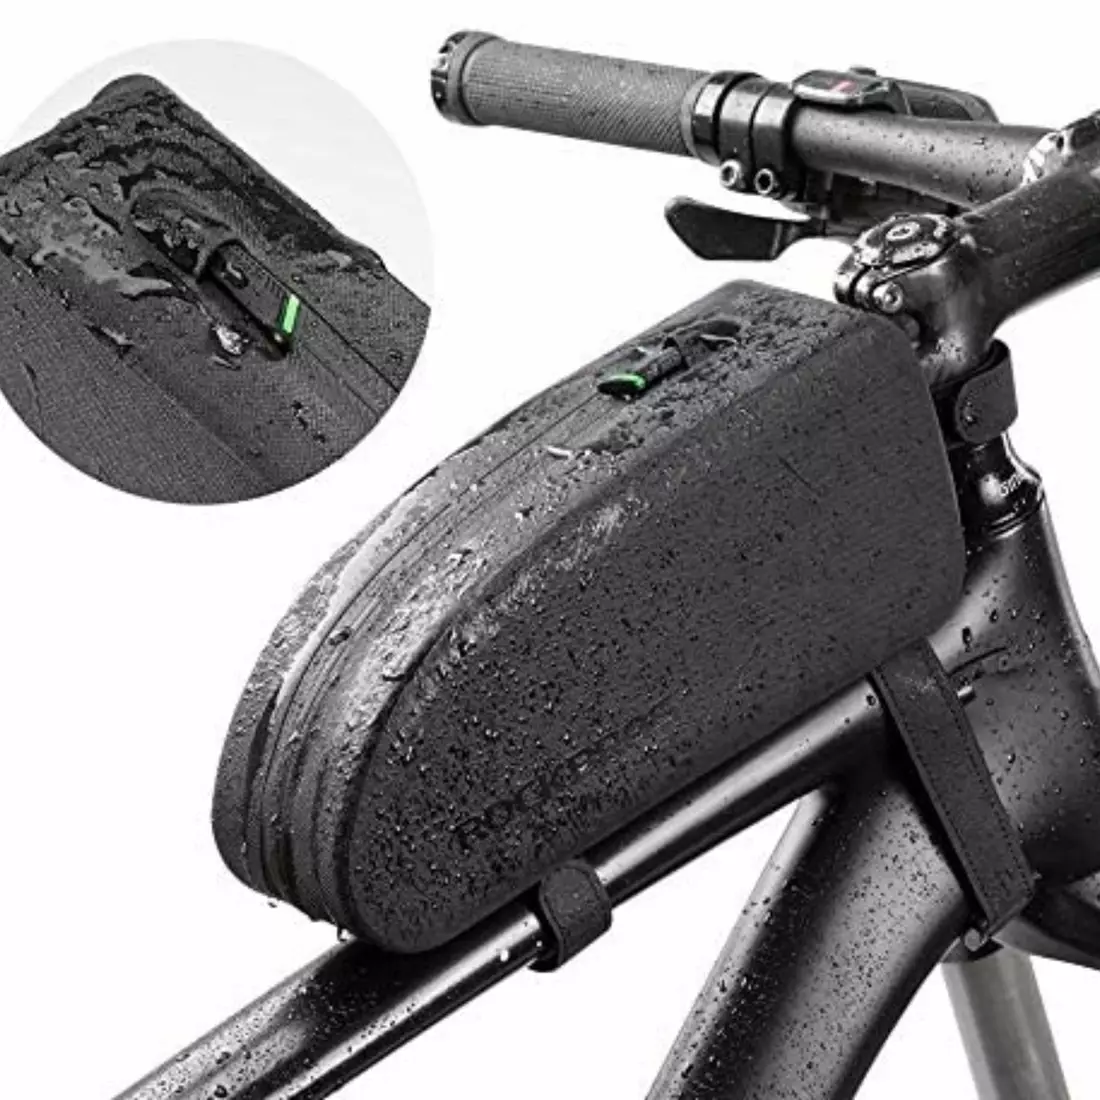 Rockbros vodotesná bicyklová taška na rám 1,0l čierna AS-019